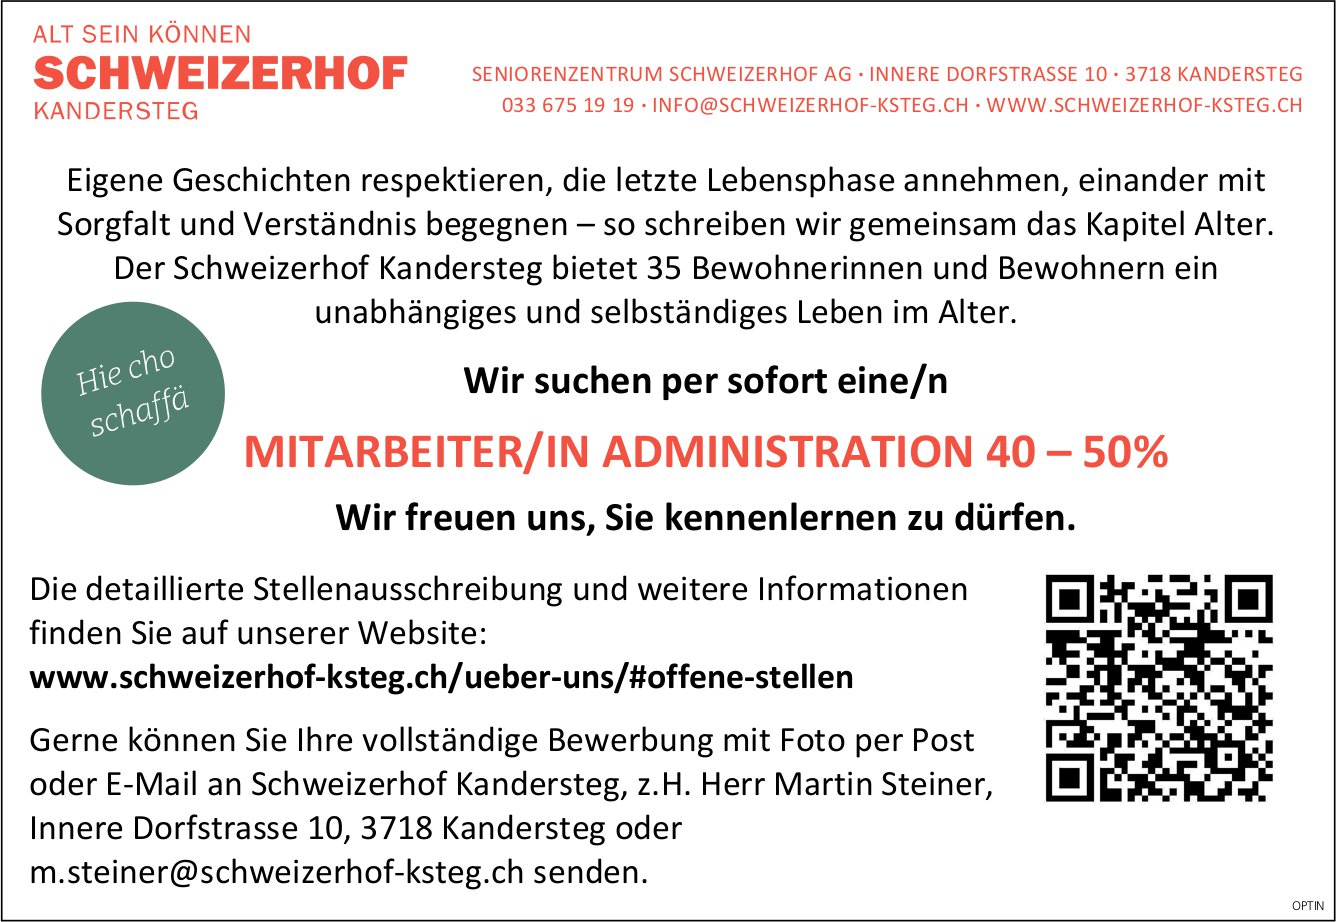 Mitarbeiter/in Administration 40-50%, Seniorenzentrum Schweizerhof AG, Kandersteg, gesucht